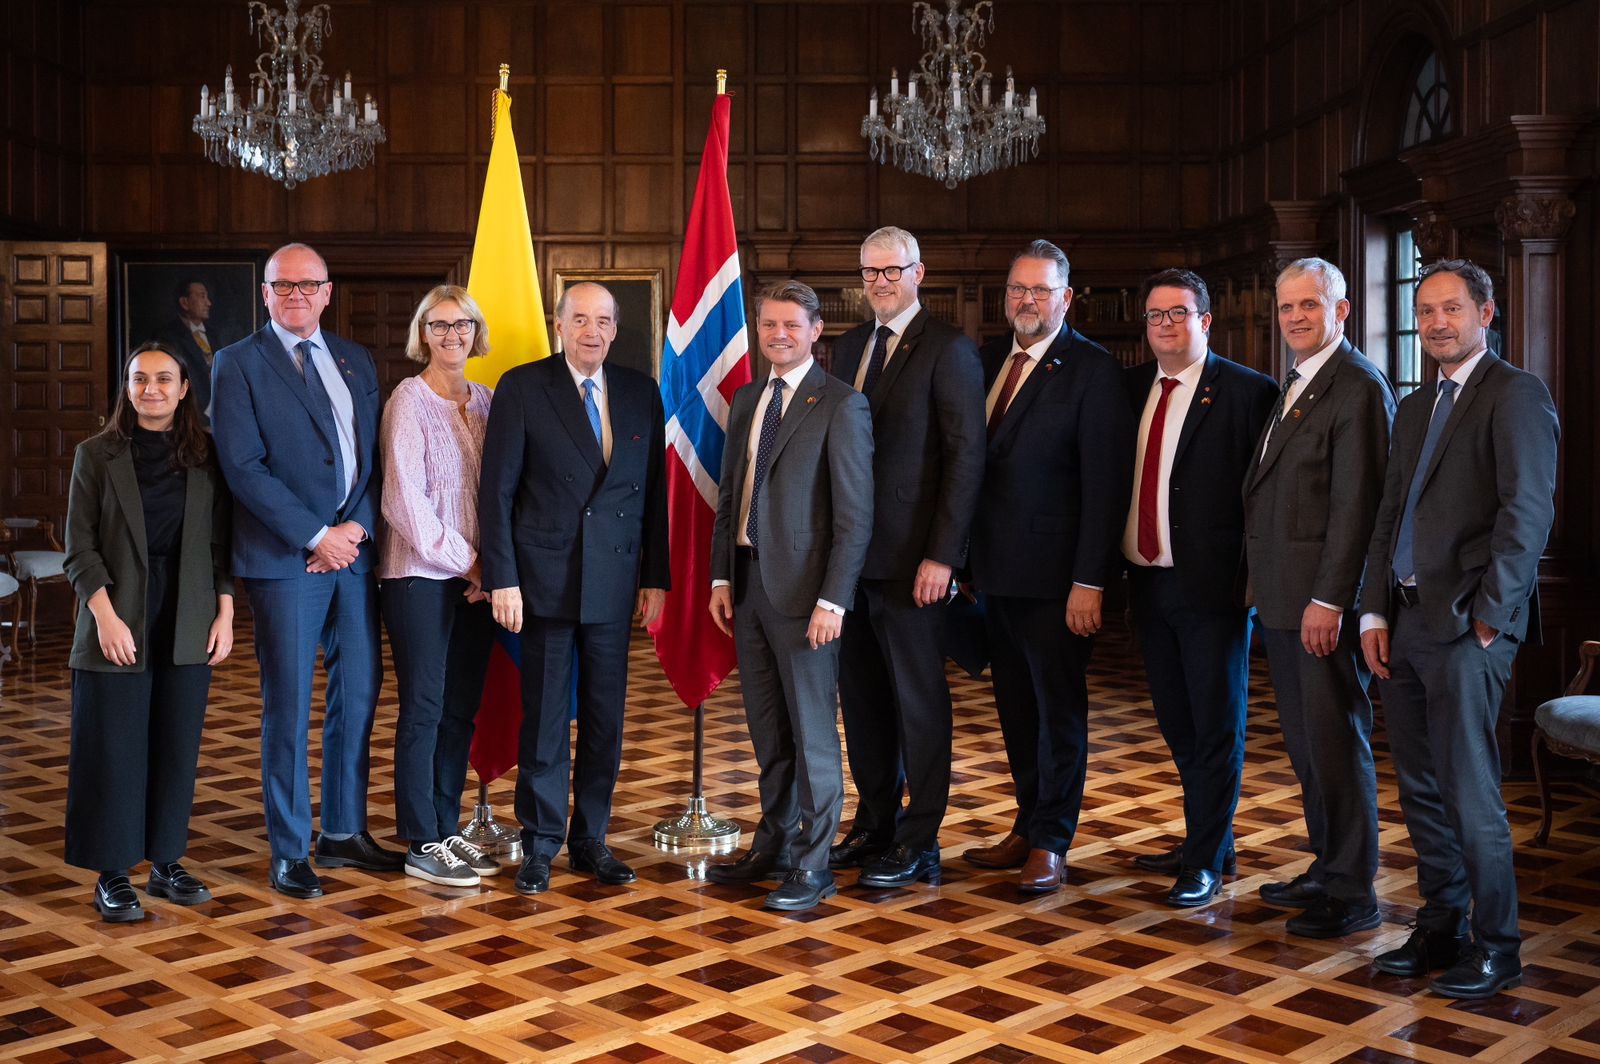 Colombia afianza la relación bilateral con la visita de la Comisión Permanente de Control y Asuntos Constitucionales de Noruega